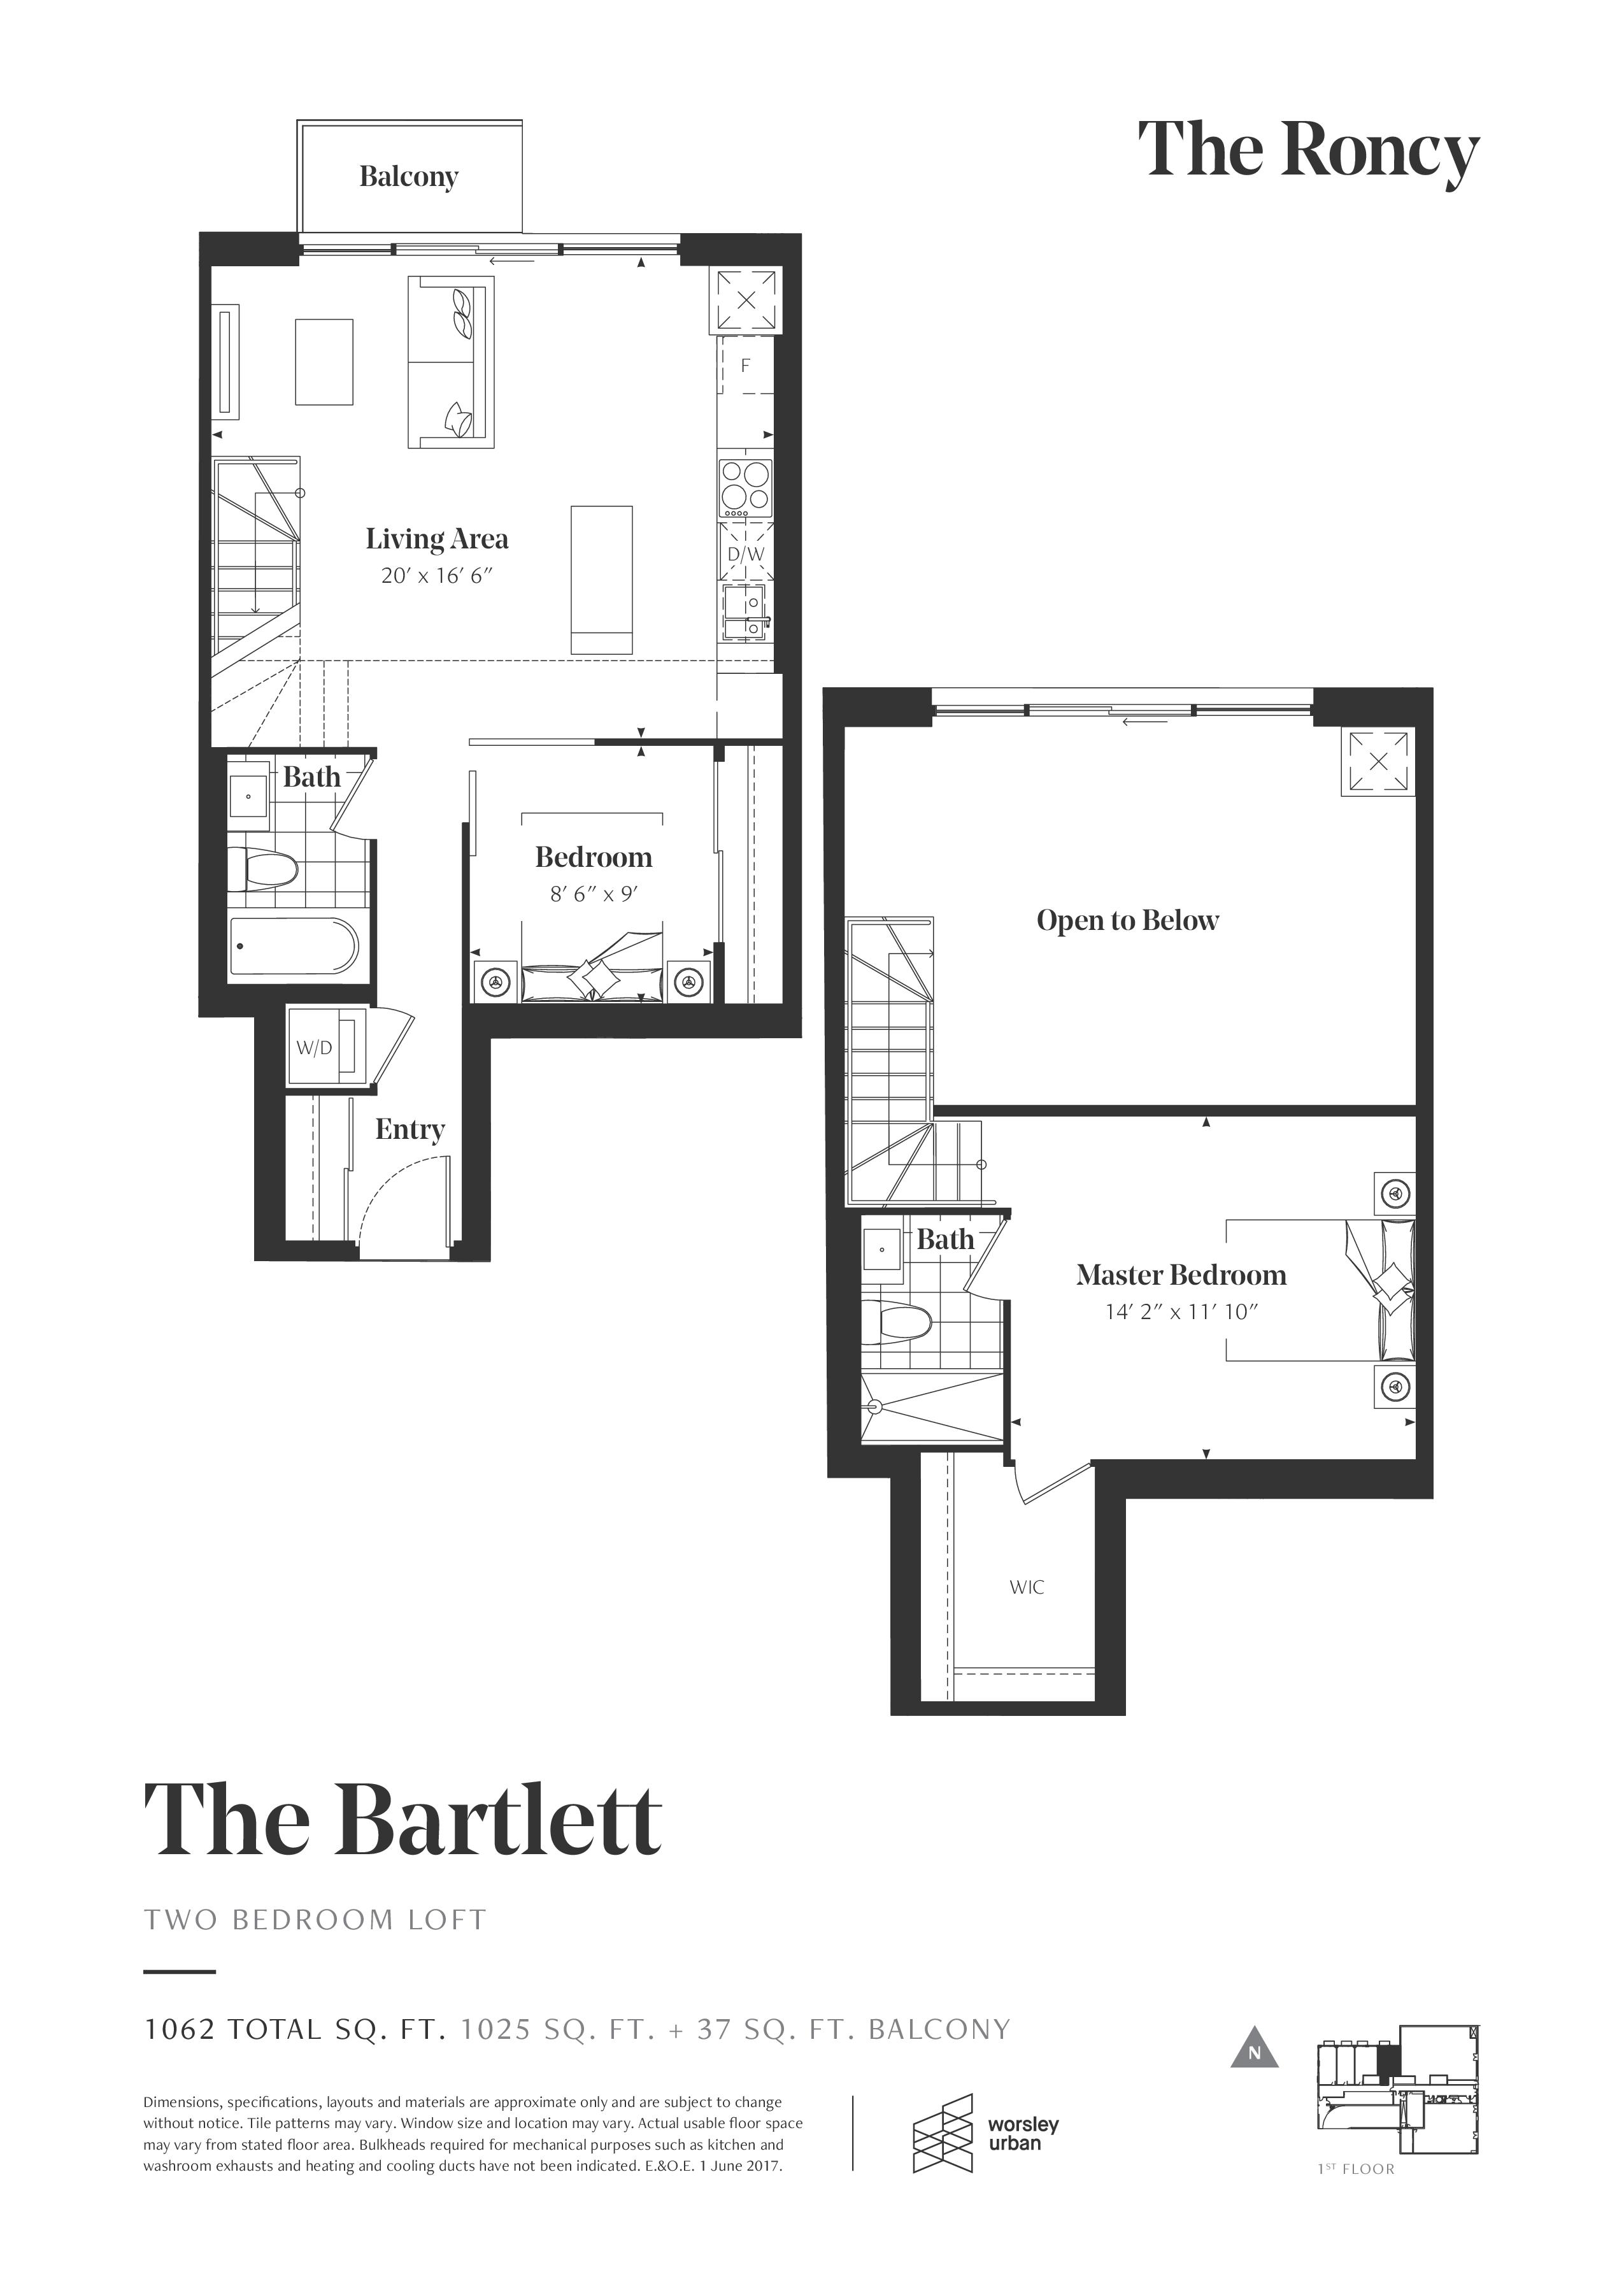 The Barlett